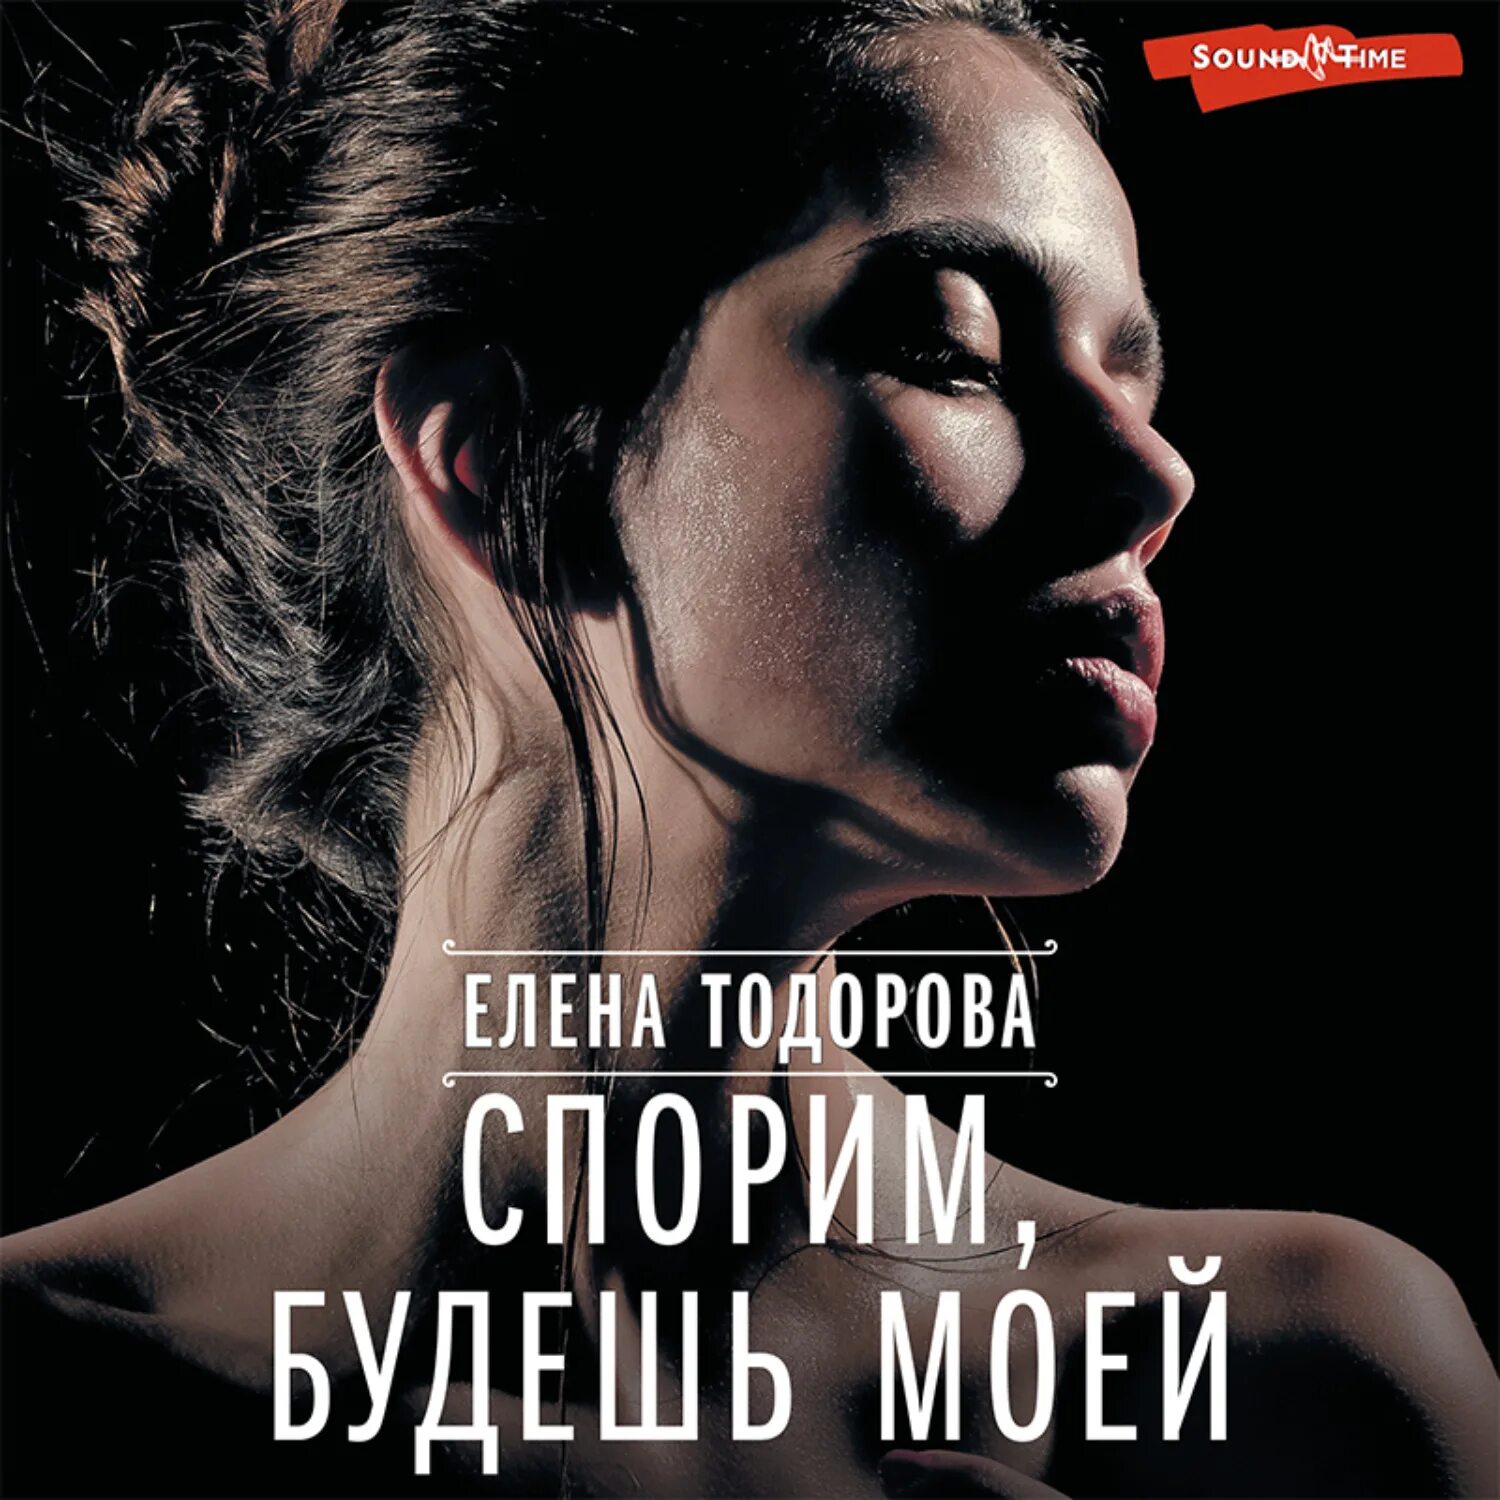 Аудиокнига спорим. Тихий город аудиокнига. Купить книги Елены Тодоровой. Будь моей книга.